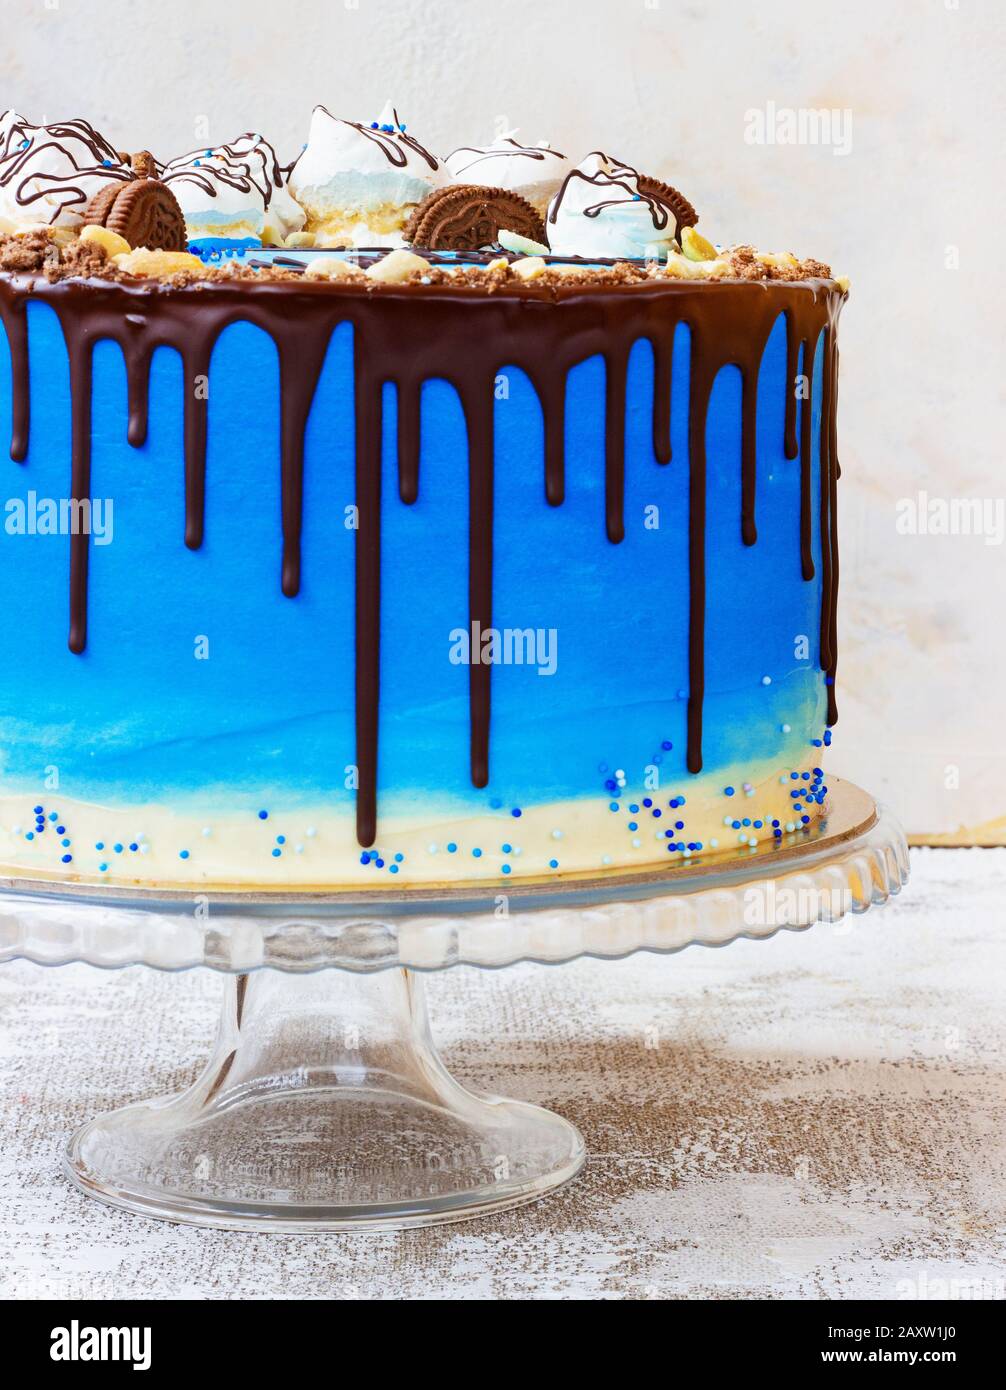 Gâteau bleu crème dans un style marin sur un fond clair avec du chocolat Banque D'Images